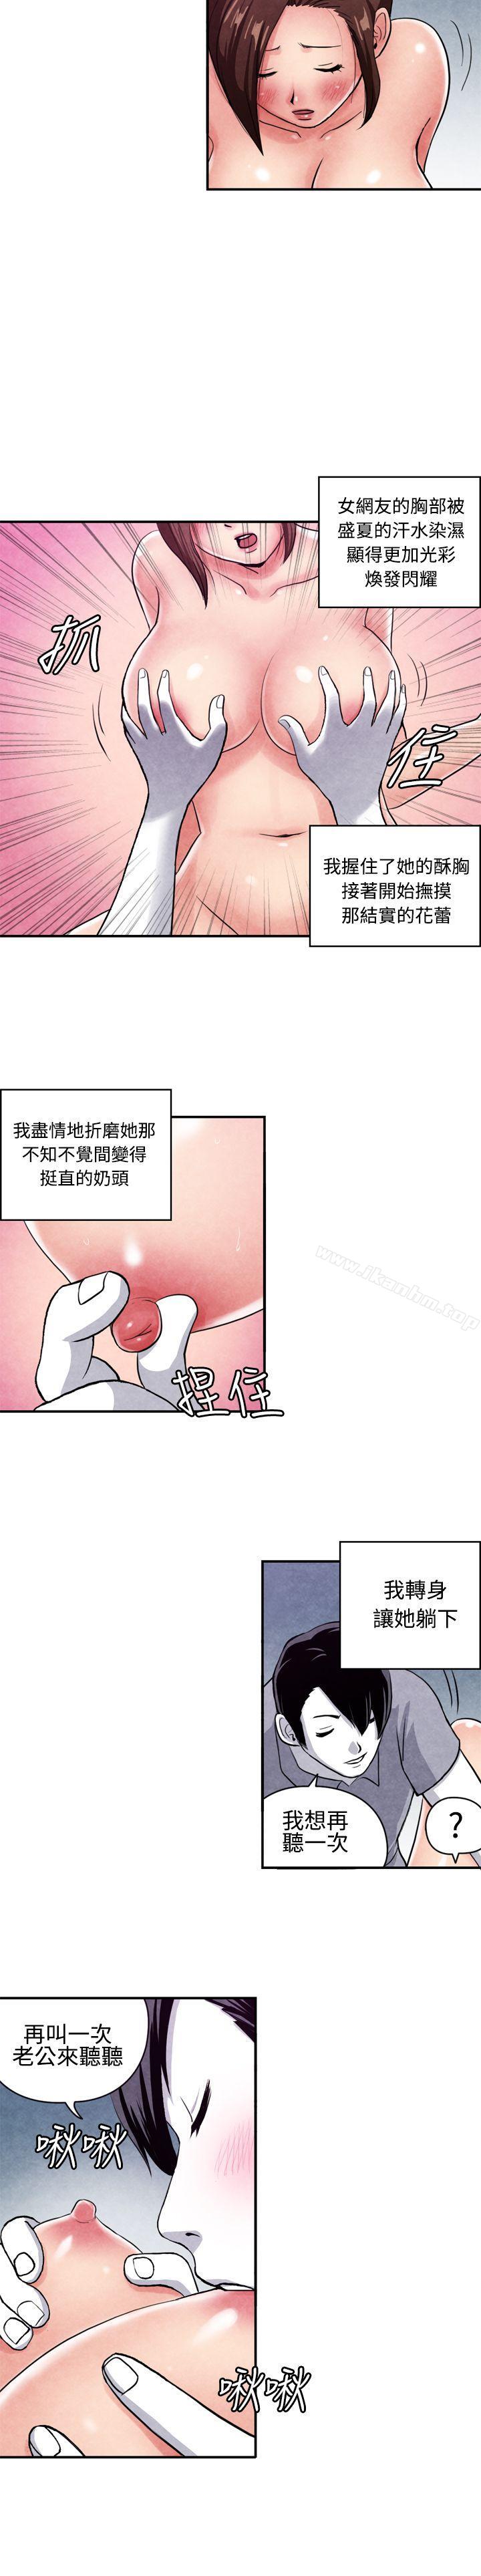 漫画韩国 生物學的女性攻略法   - 立即阅读 生物學的女性攻略法 CASE 07-2. 未婚媽媽和一日爸爸第2漫画图片